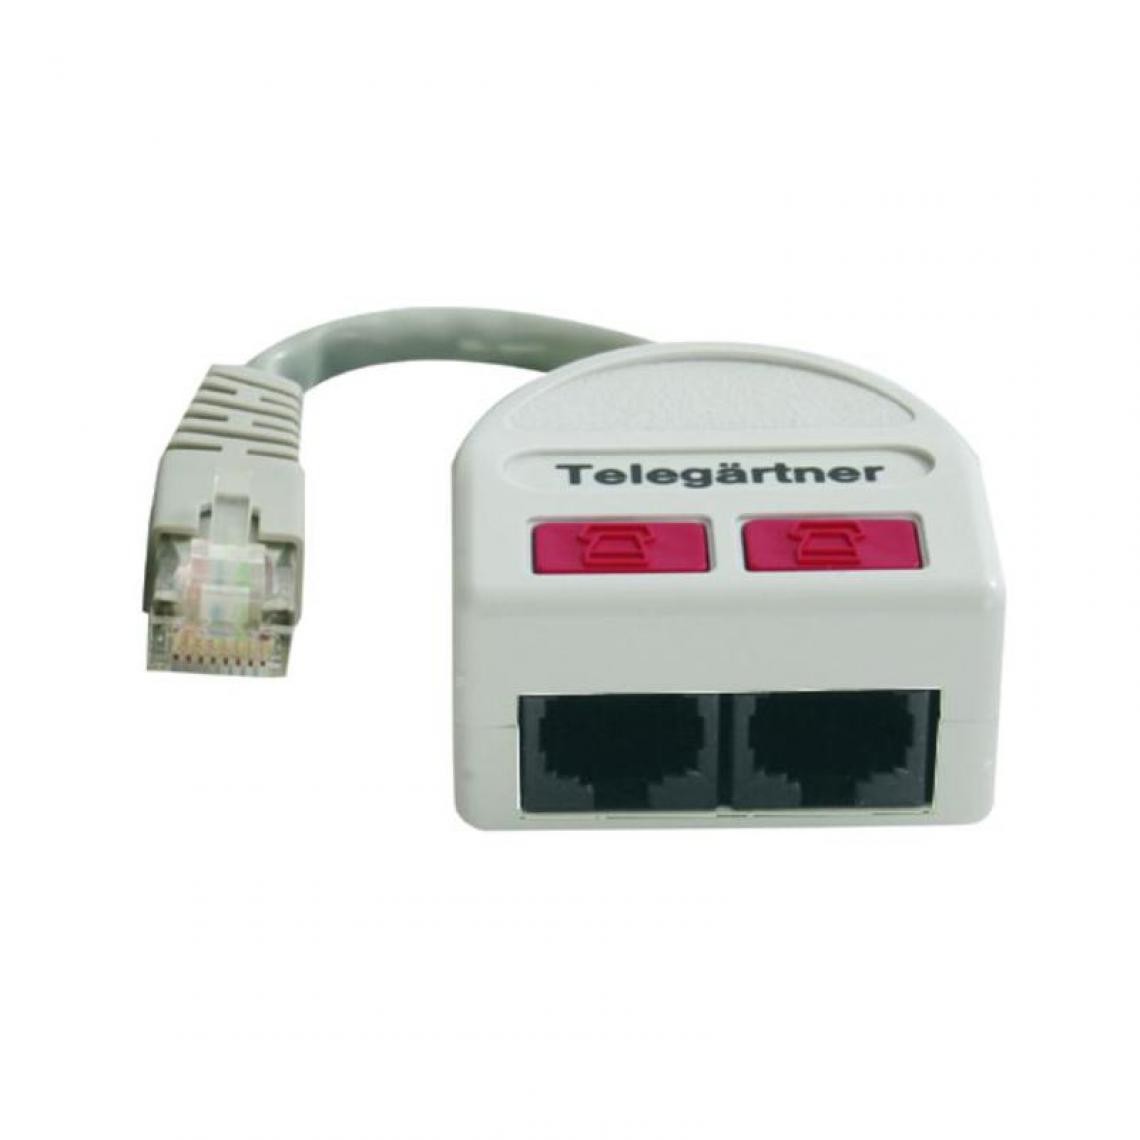 Telegartner - Telegärtner RNIS T-adaptateur pour page Patch Panel () - Accessoires Téléphone Fixe